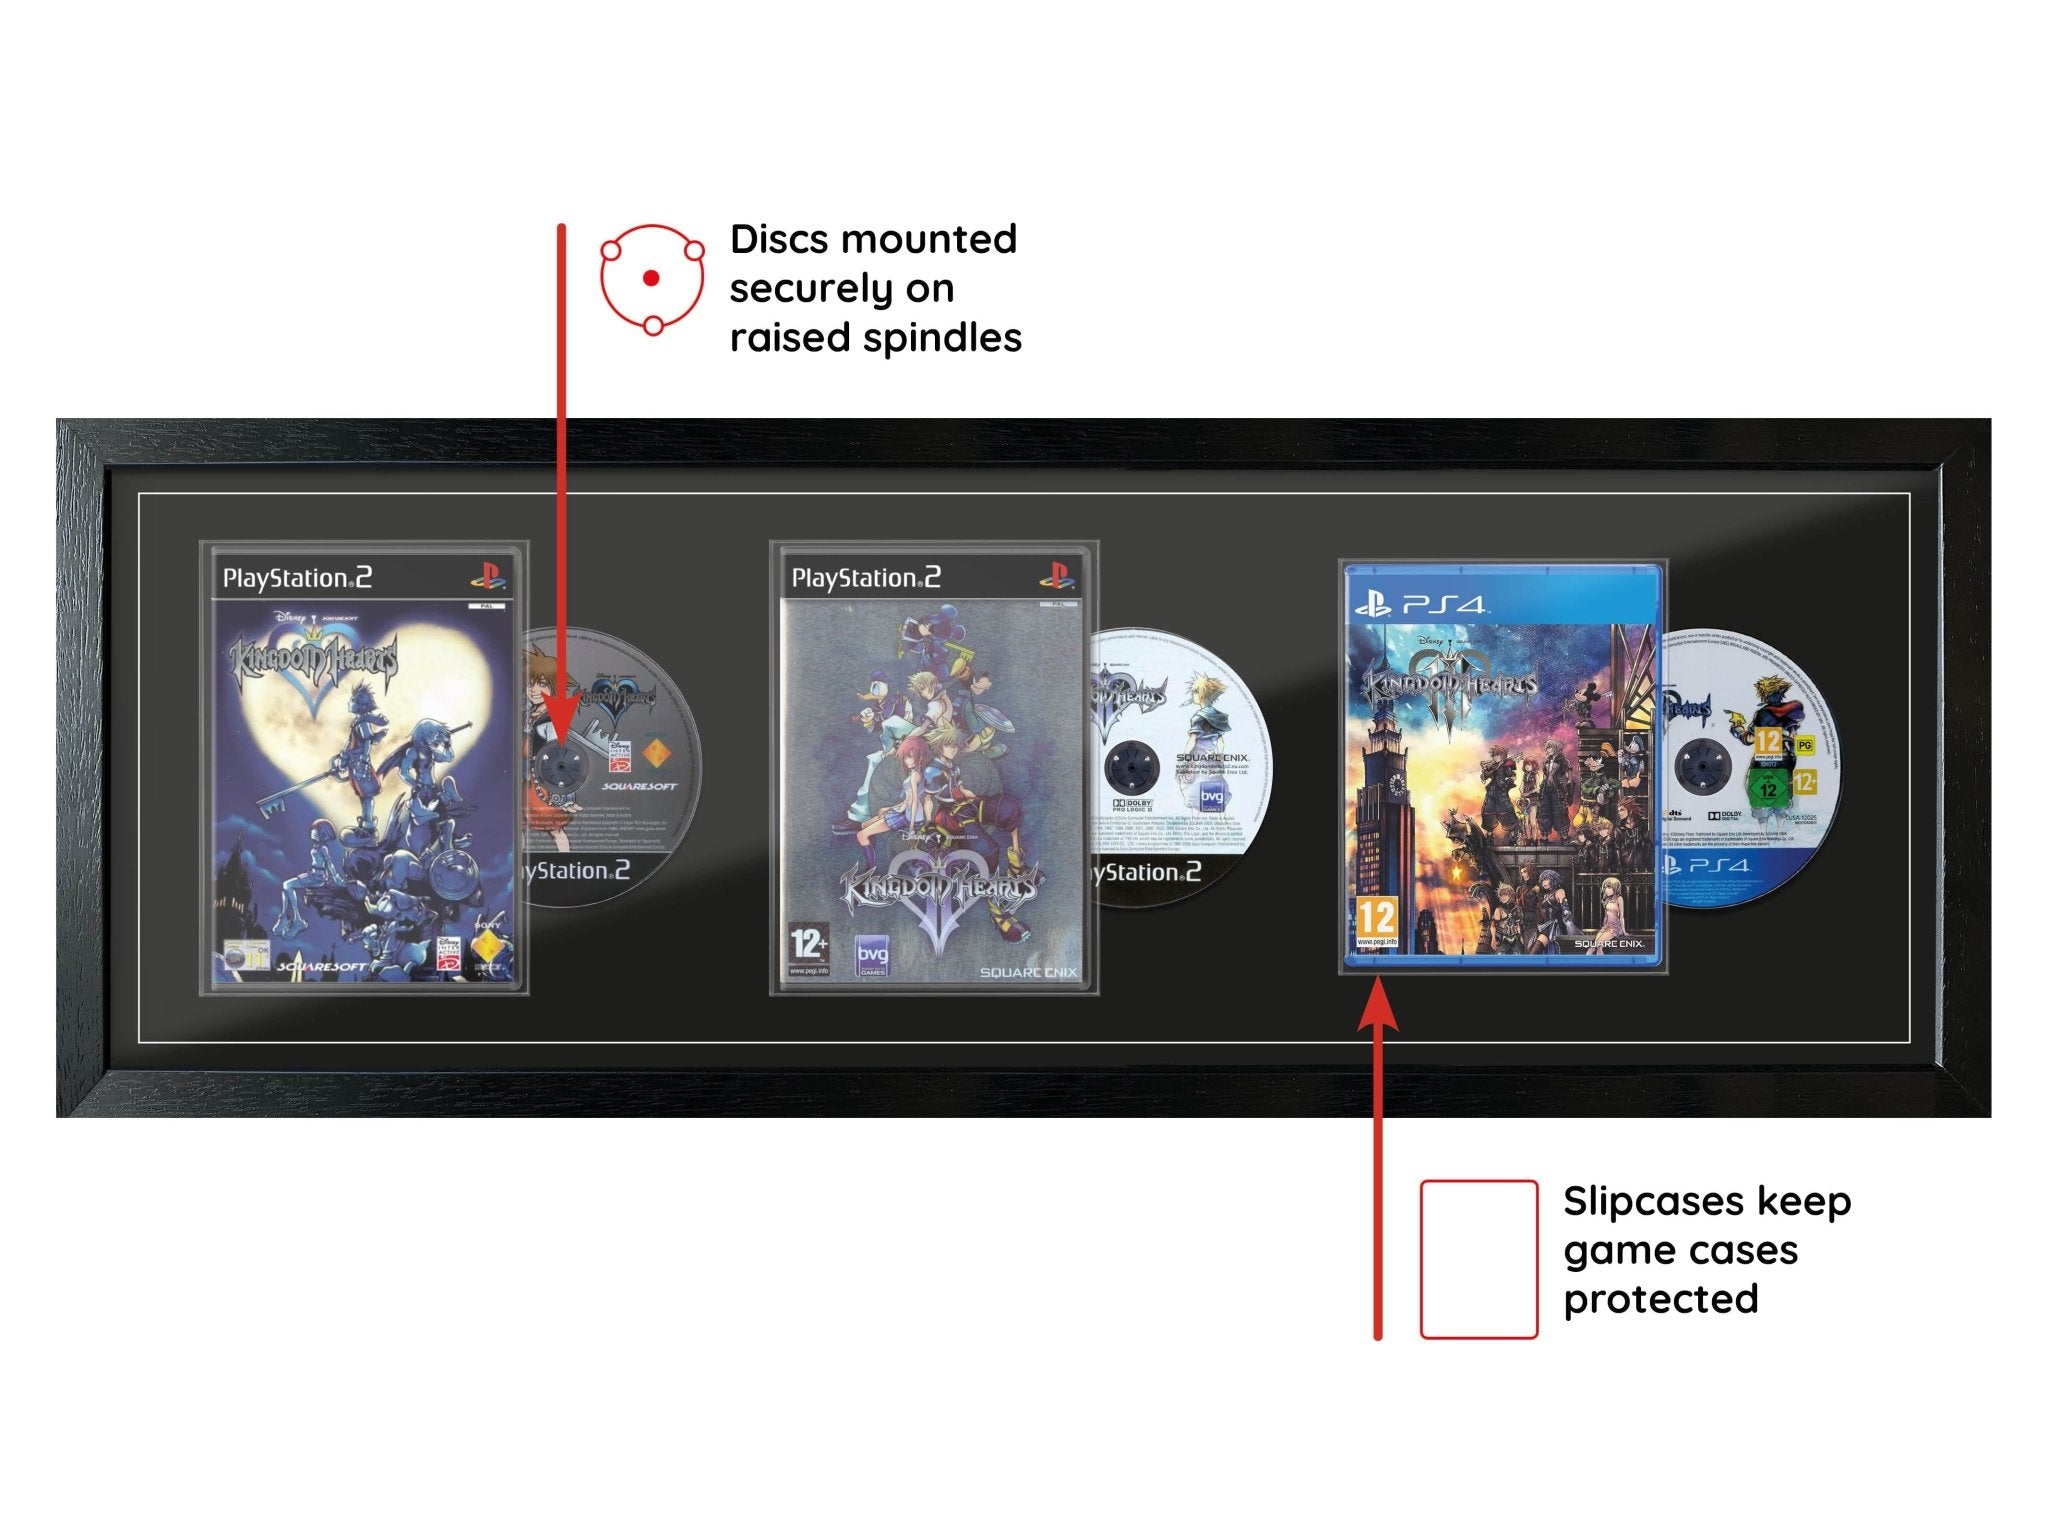 Kingdom Hearts Trilogy (Exhibition Range) Framed Games - Frame-A-Game